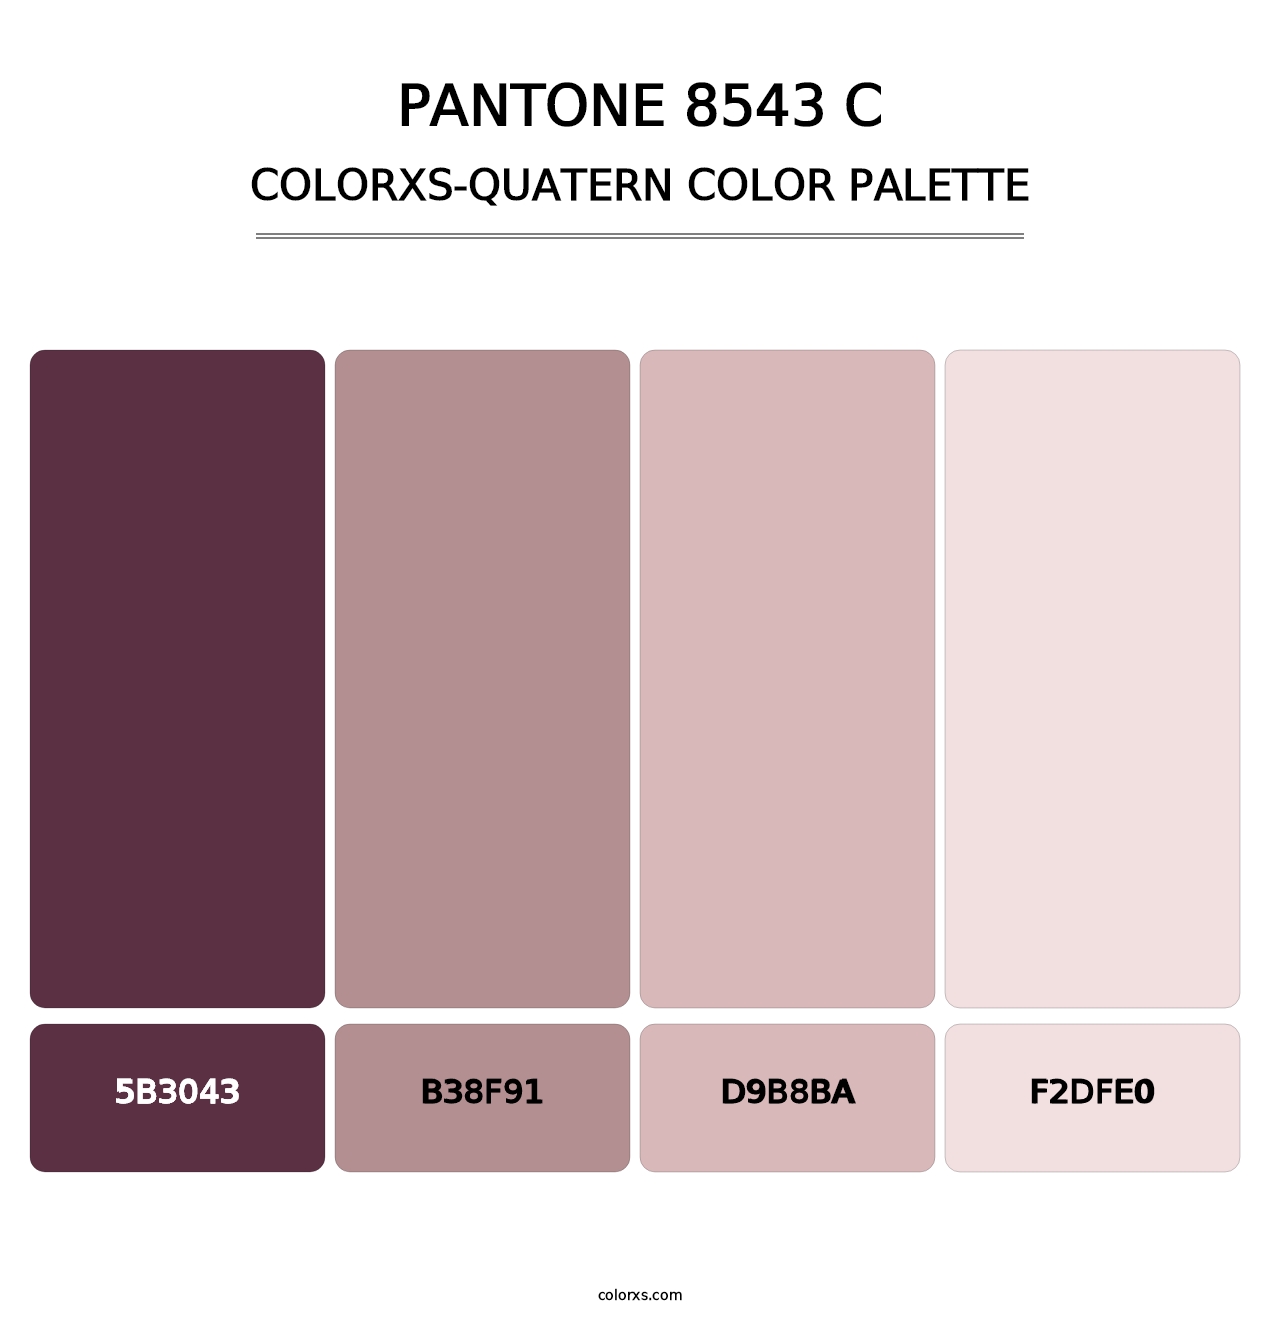 PANTONE 8543 C - Colorxs Quatern Palette